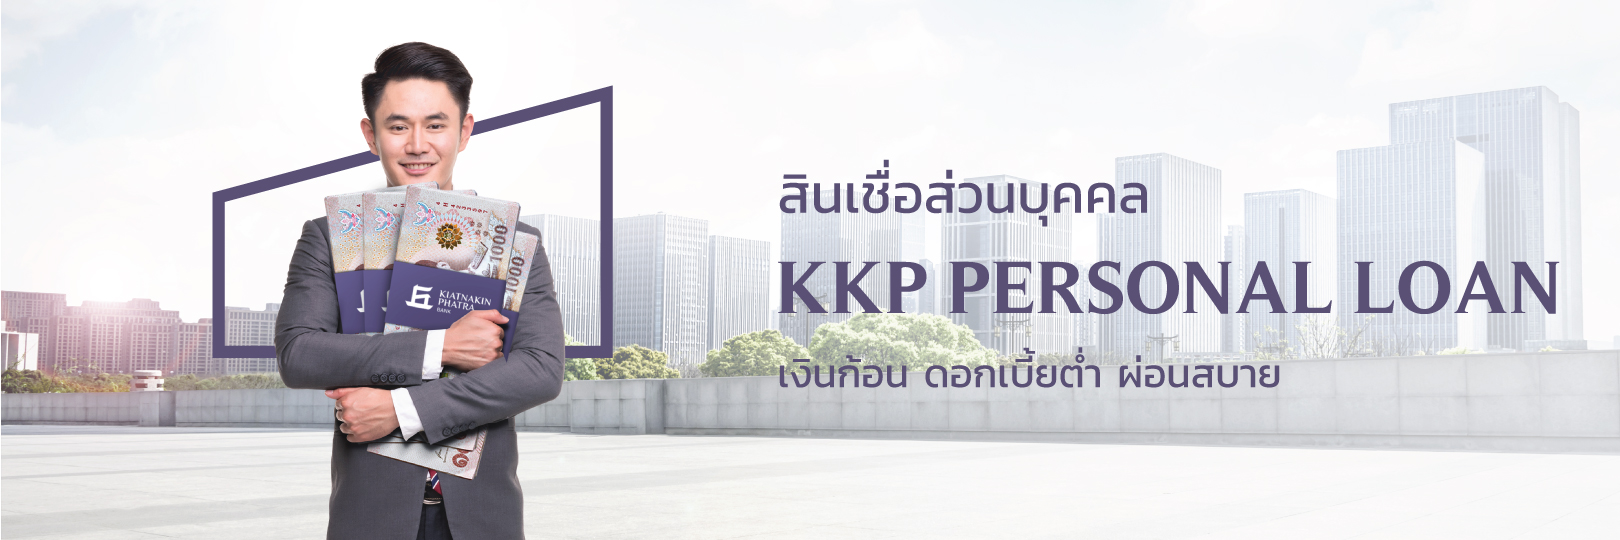 เงินก้อน ผ่อนสบายๆ กับสินเชื่อส่วนบุคคล Kkp Personal Loan -  ธนาคารเกียรตินาคินภัทร